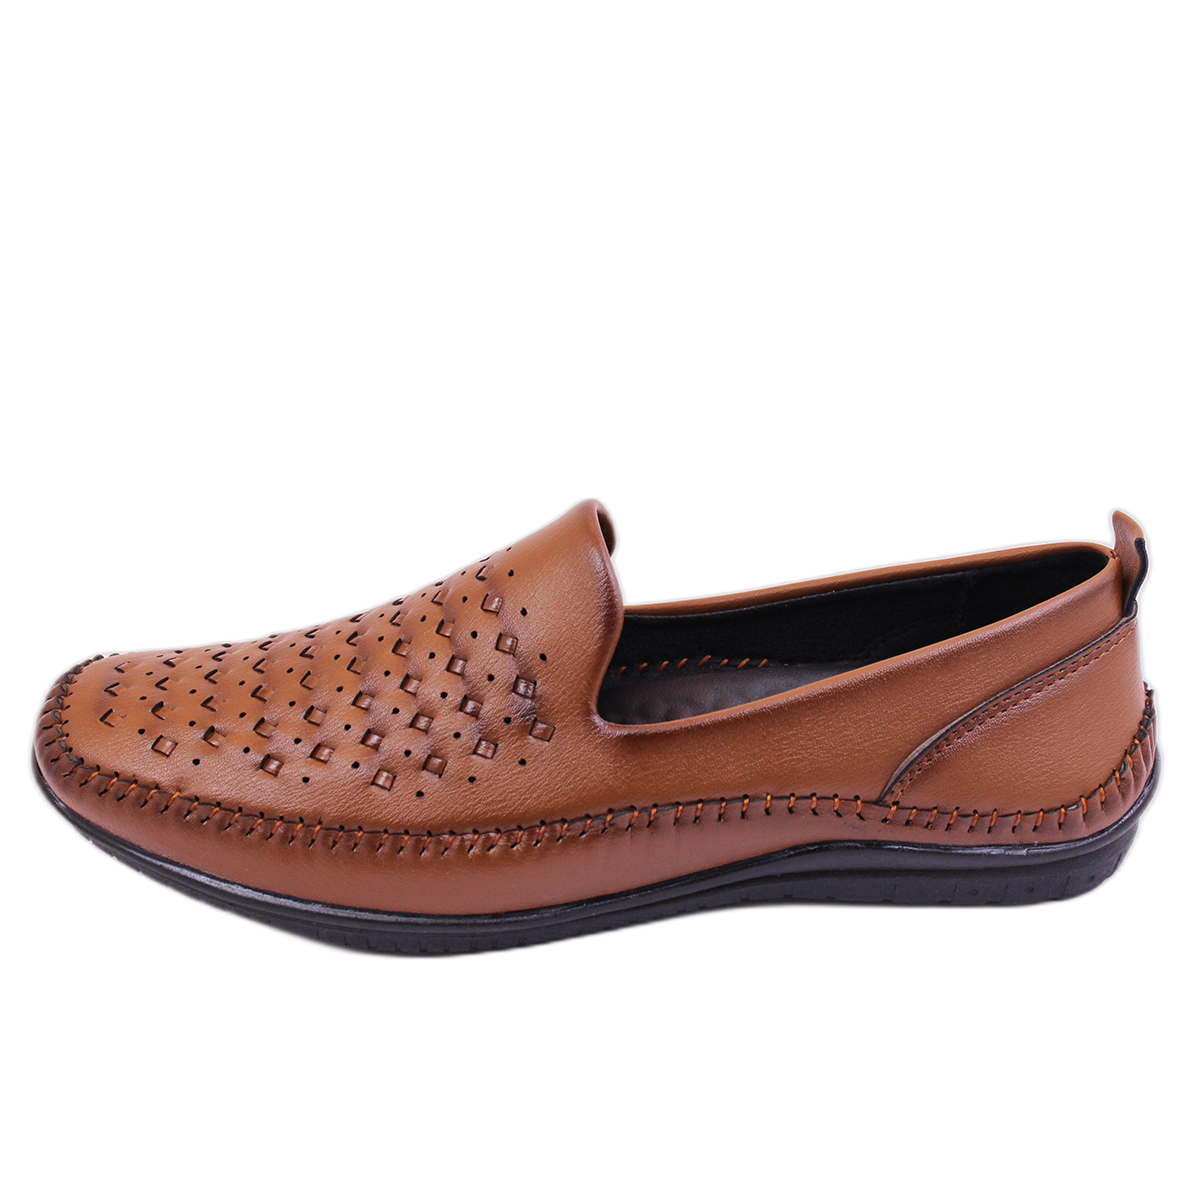 The Select U's Original Premium Leather Classic BrownJ ali Bantu Kolhapuri  Chappal for Men (11) : Amazon.in: Shoes & Handbags